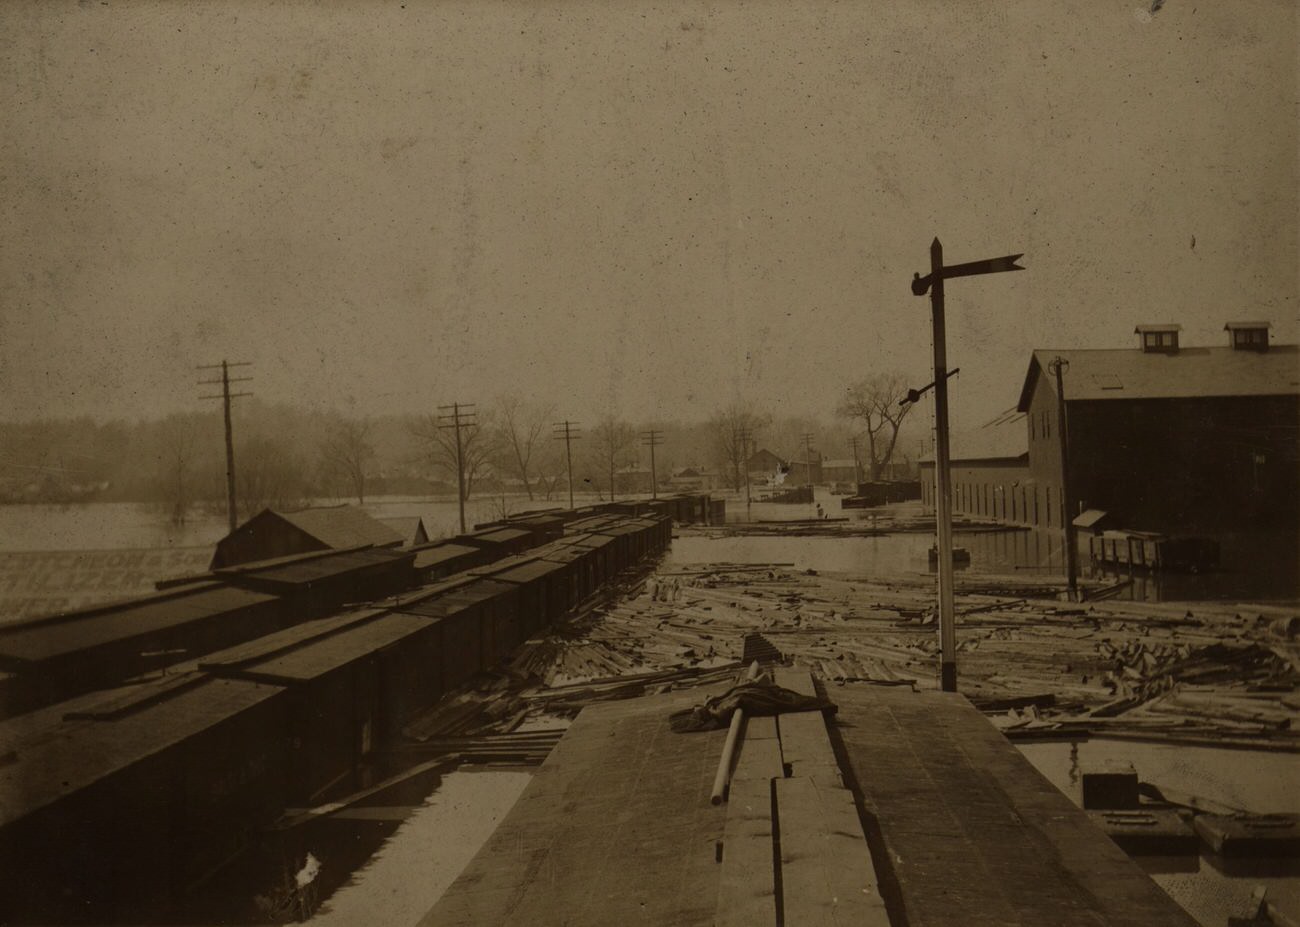 Flooded Central Ohio Rail Road Company yard in Zanesville, Ohio, March 1898.